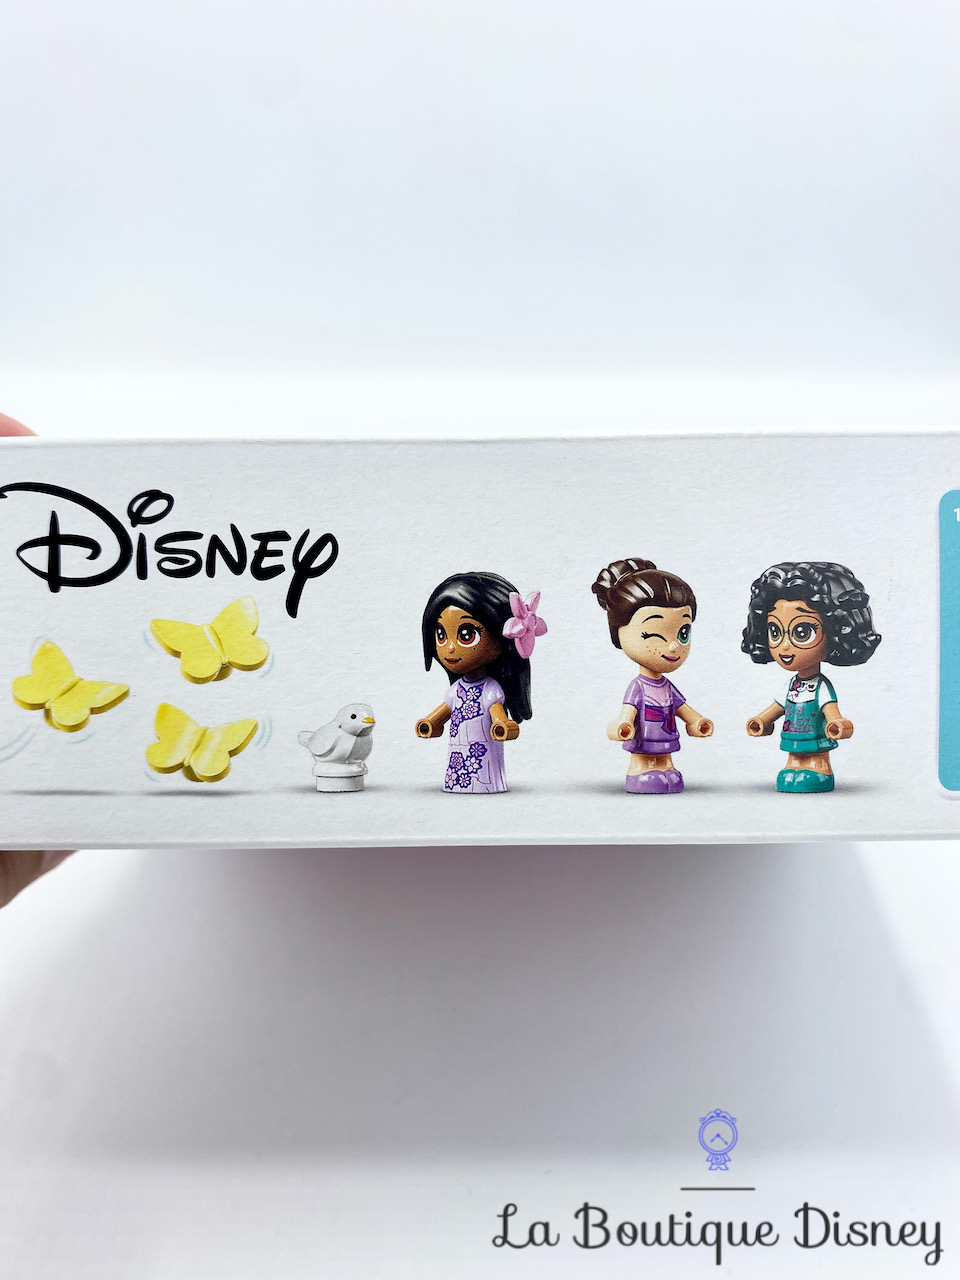 LEGO 43201 Disney Princess La Porte Magique d’Isabela, pour Enfants 5 Ans,  Ensemble du Film Encanto, Jouet De Construction